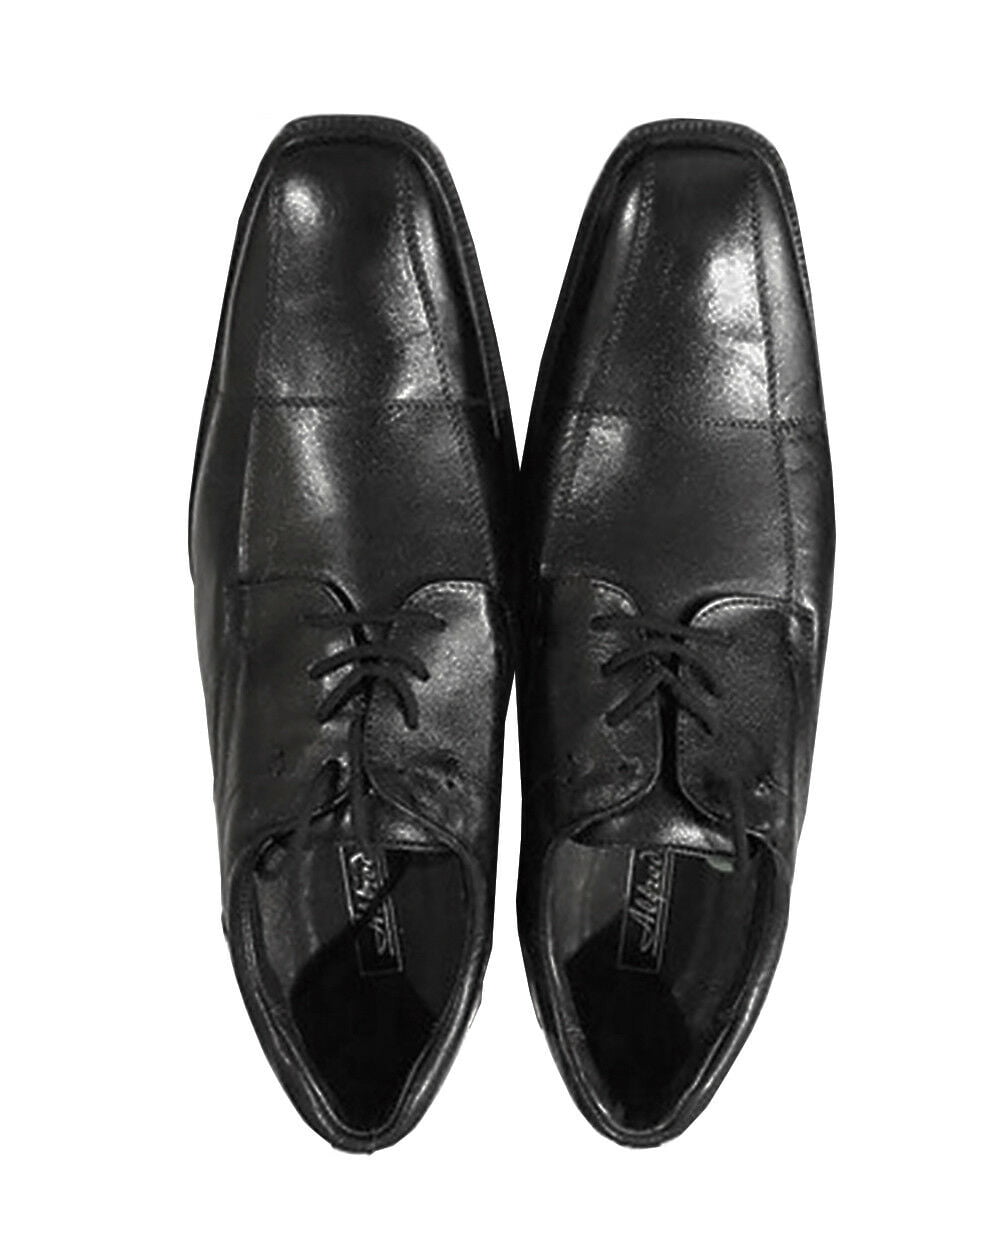 Alfredo Men's Lace up Shoes Style# 1260, Black - Size 40 - Walmart.com